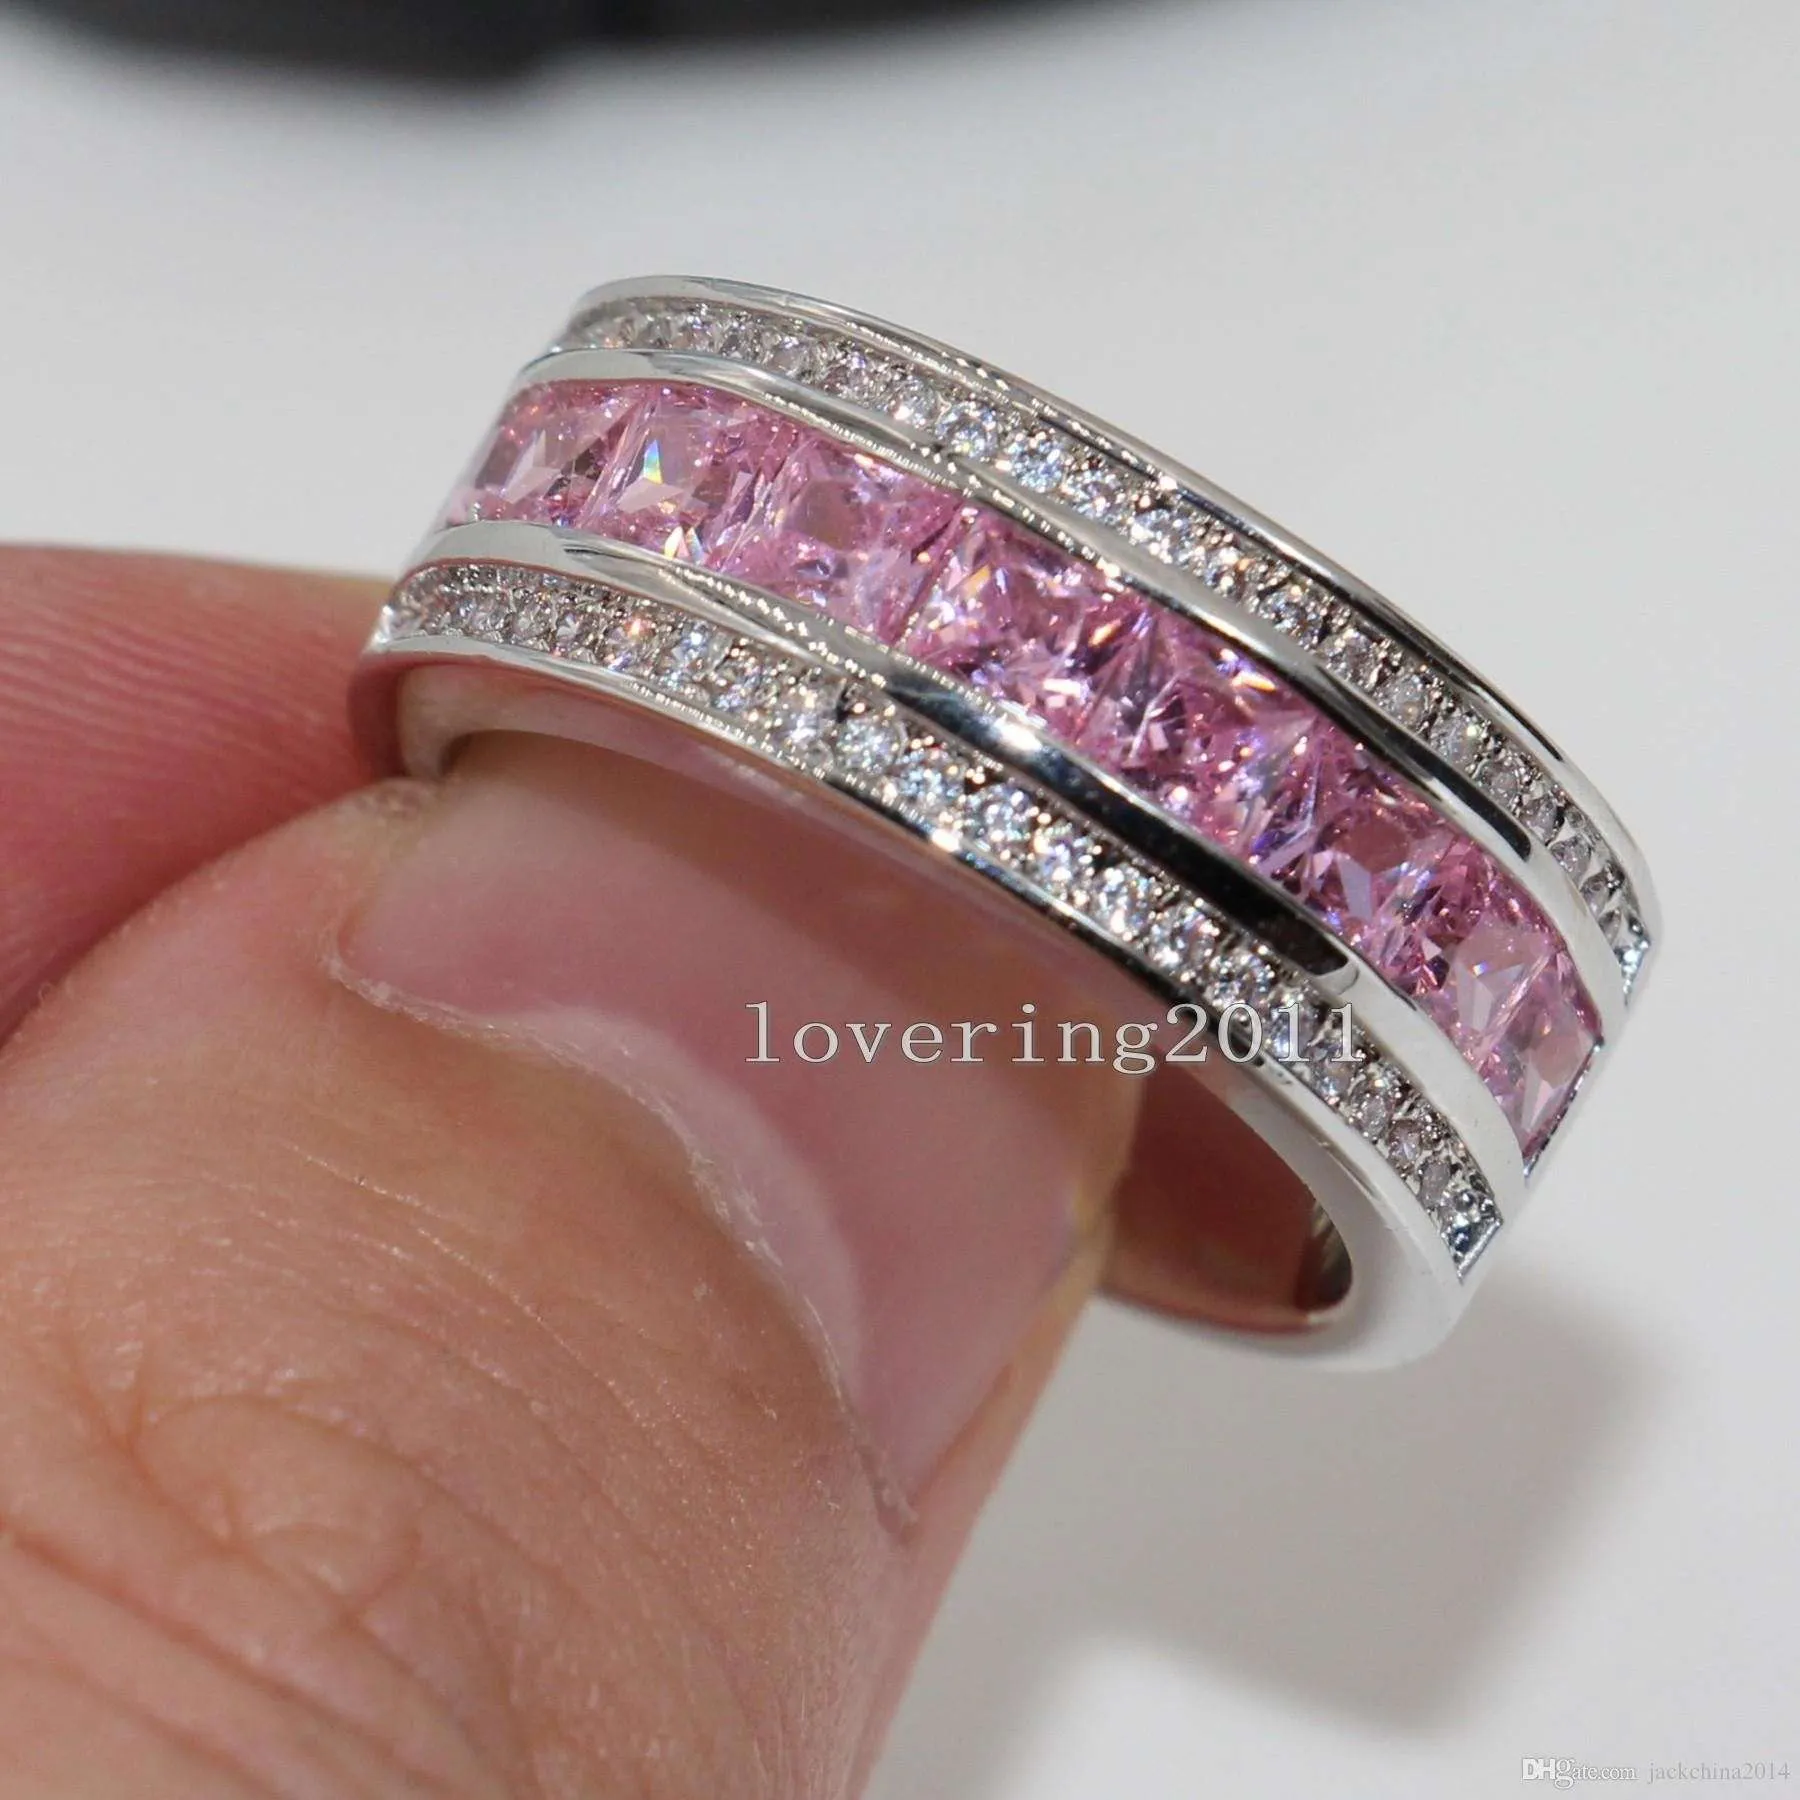 プリンセスカットラグジュアリー素敵なピンクサファイアダイヤモニーク10ktホワイトゴールドいっぱいの女性シミュレートダイヤモンドの結婚式の婚約Pandora Ring Gift SZ5-11